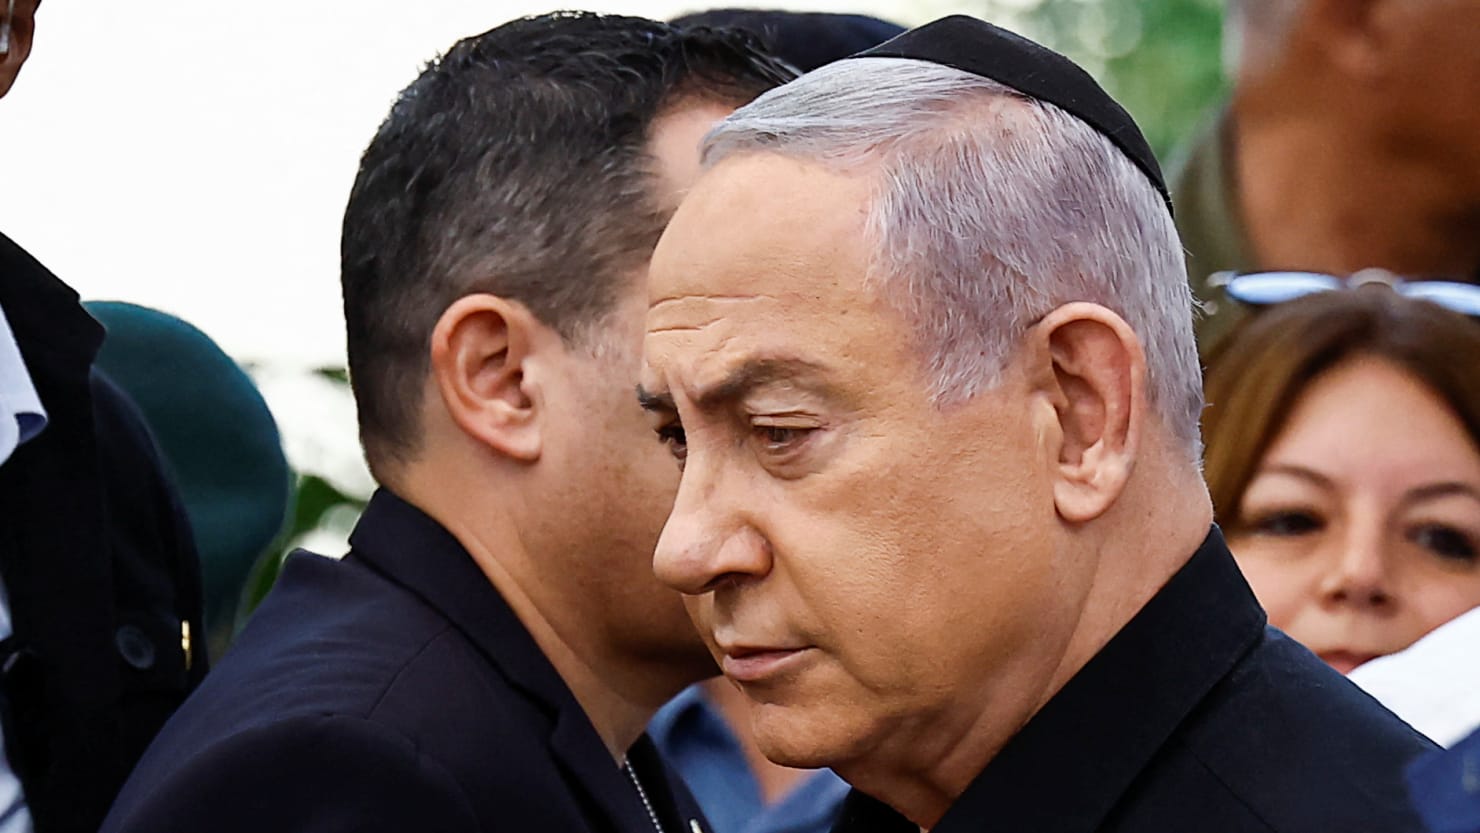 المسؤول الإسرائيلي غادي آيزنكوت يقول إن بنيامين نتنياهو يكذب بشأن الحرب في غزة